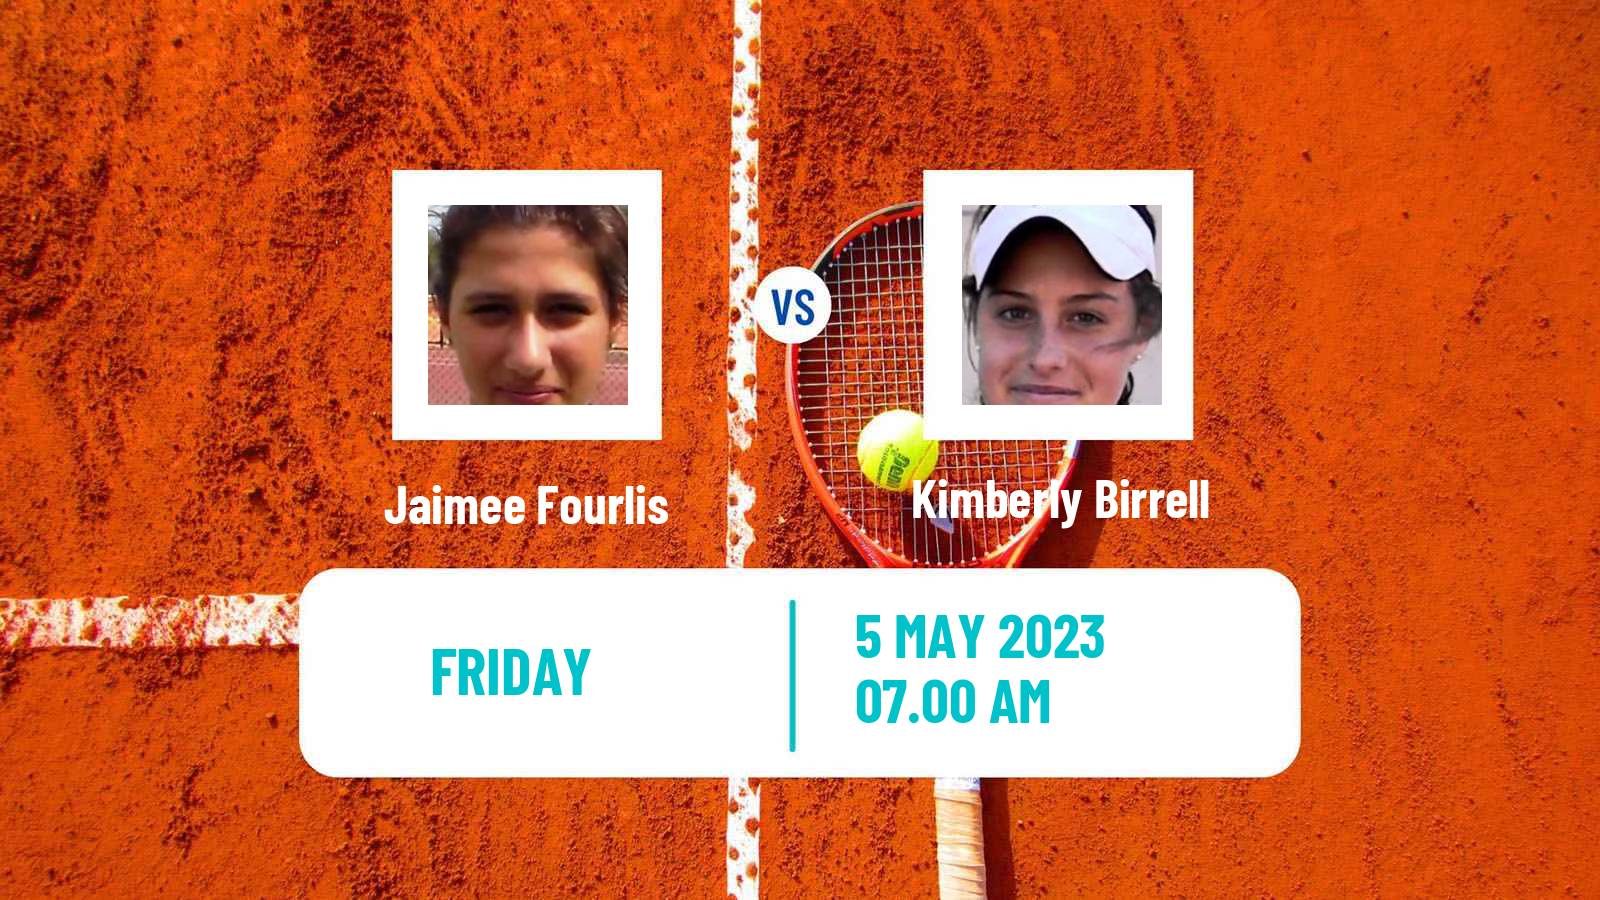 Tennis ITF Tournaments Jaimee Fourlis - Kimberly Birrell